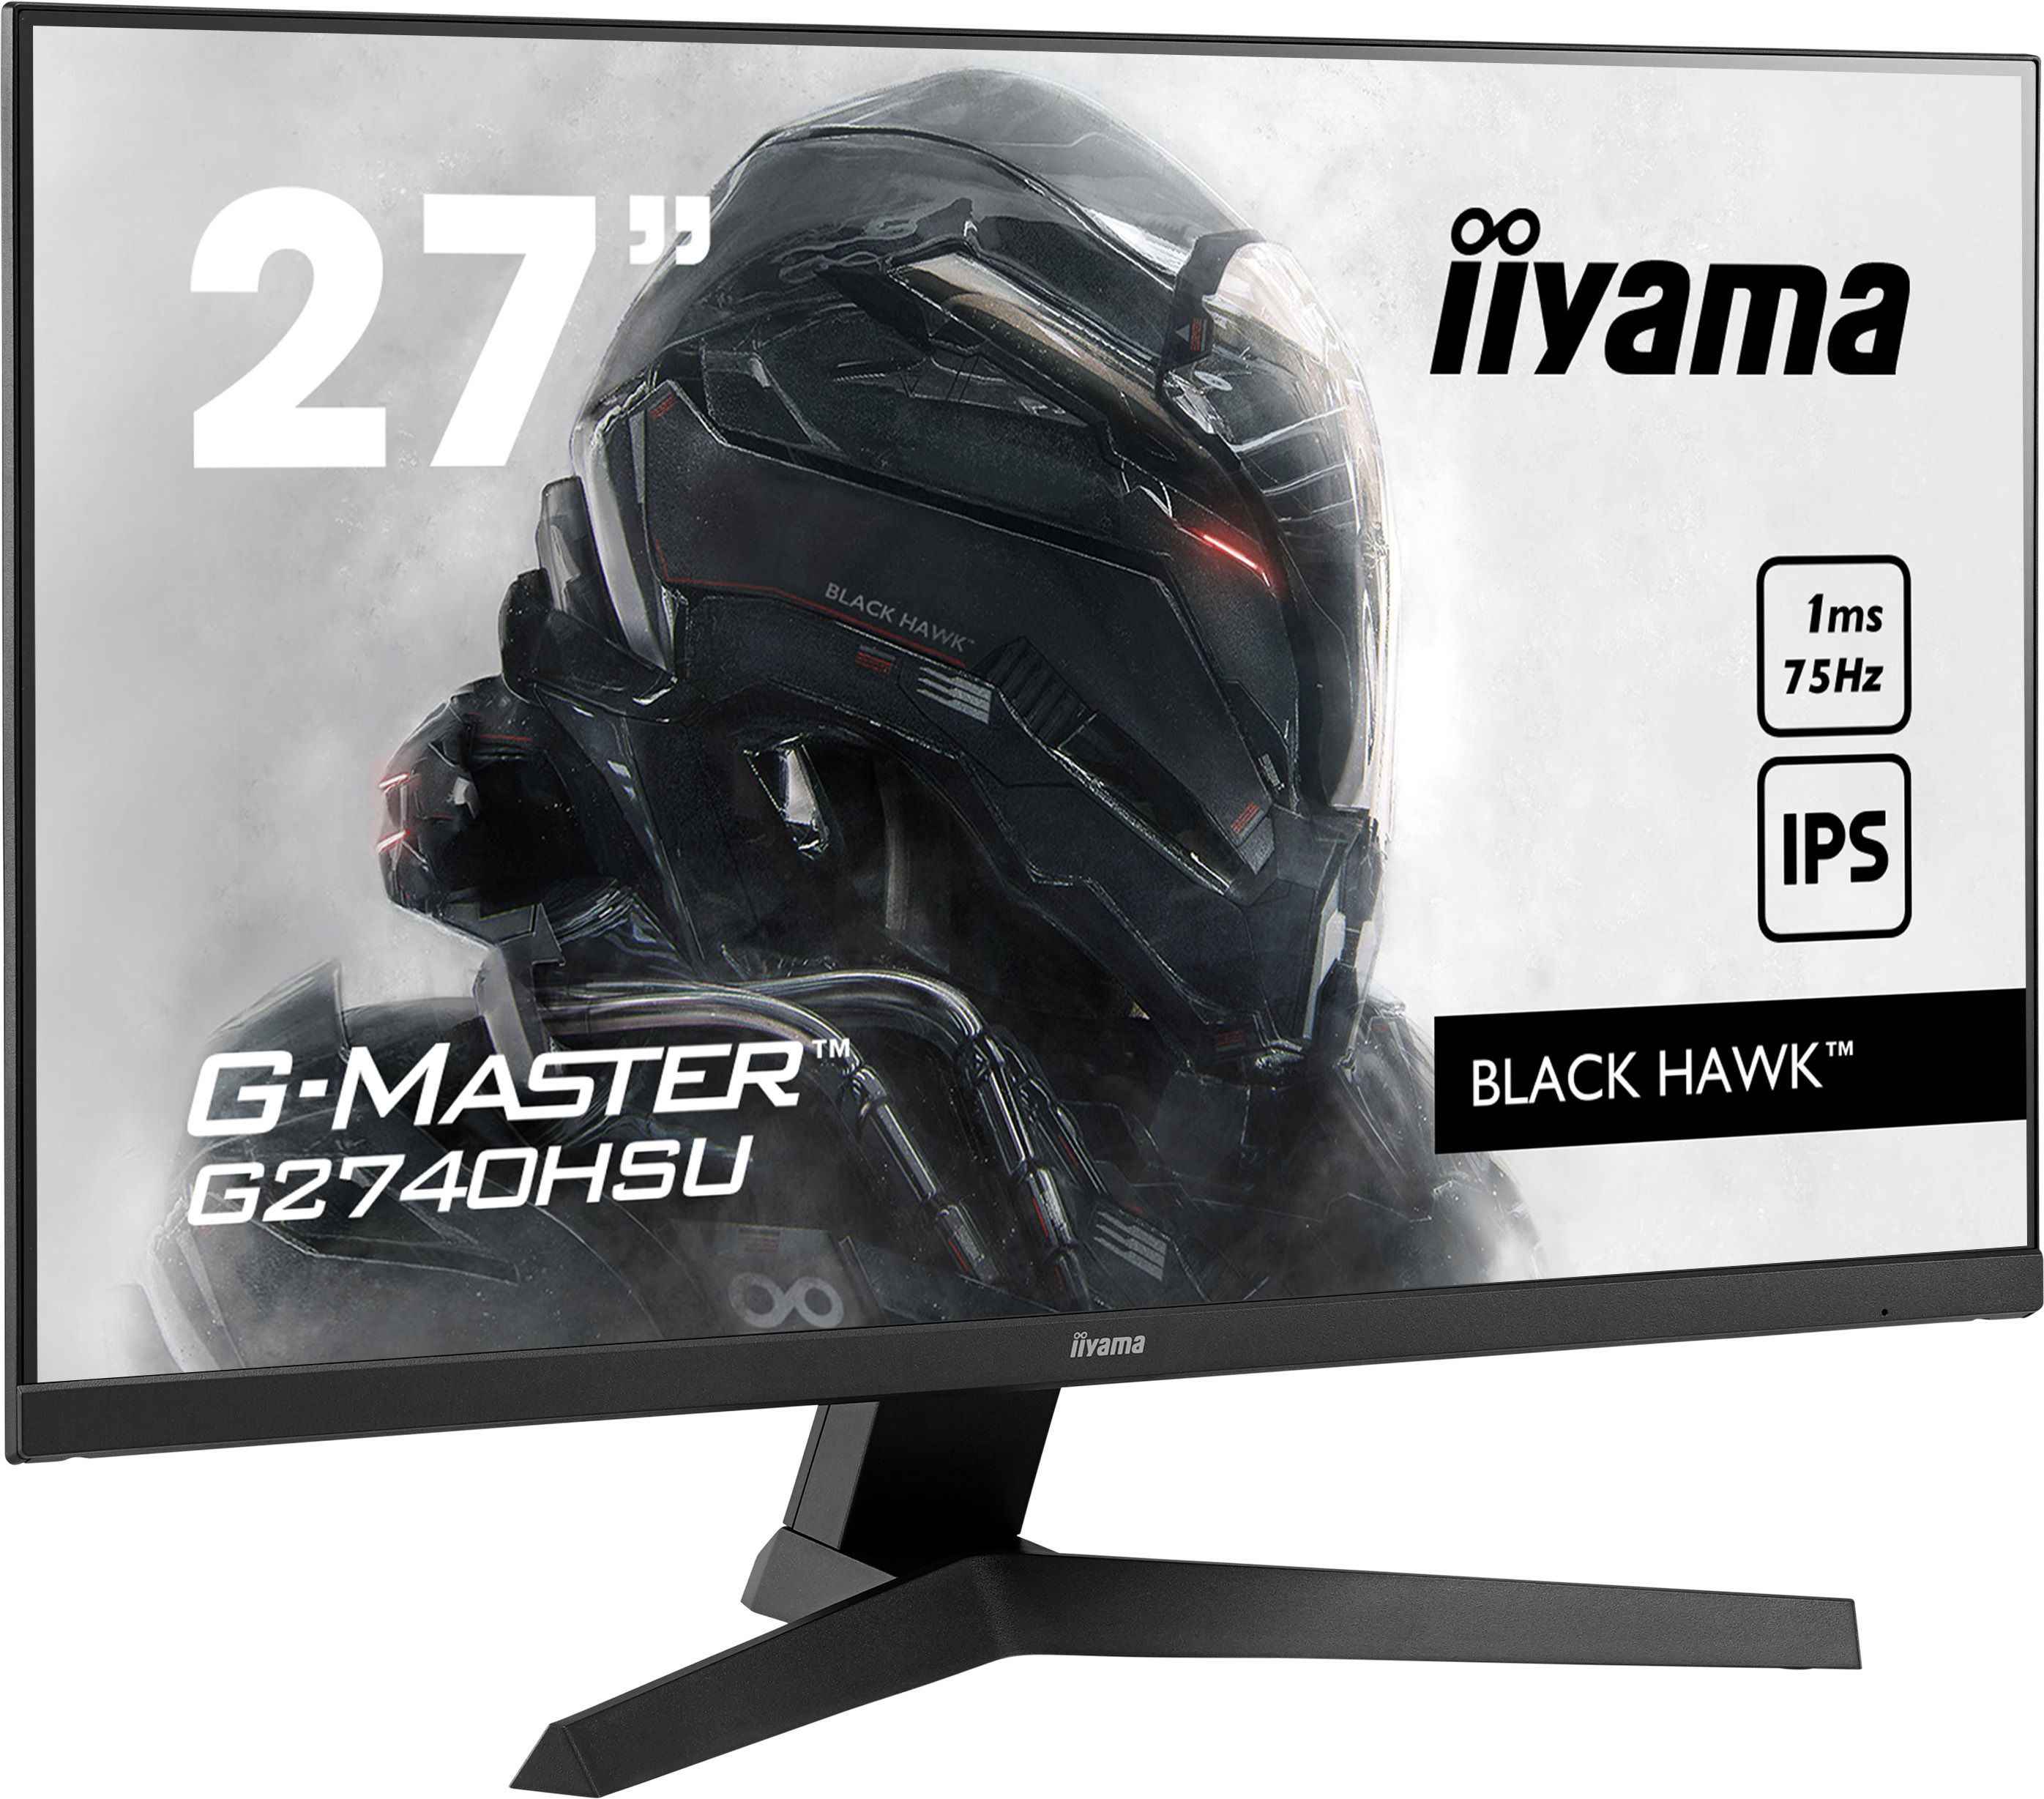 Iiyama Gmaster G2740hsub1 black hawk 27 led ips fullhd freesync reacondicionado 686 cm 1920 x 1080 pixeles negro monitor gaming de 1920x1080 panel 169 75hz 1ms 1 2 usb2.0 75